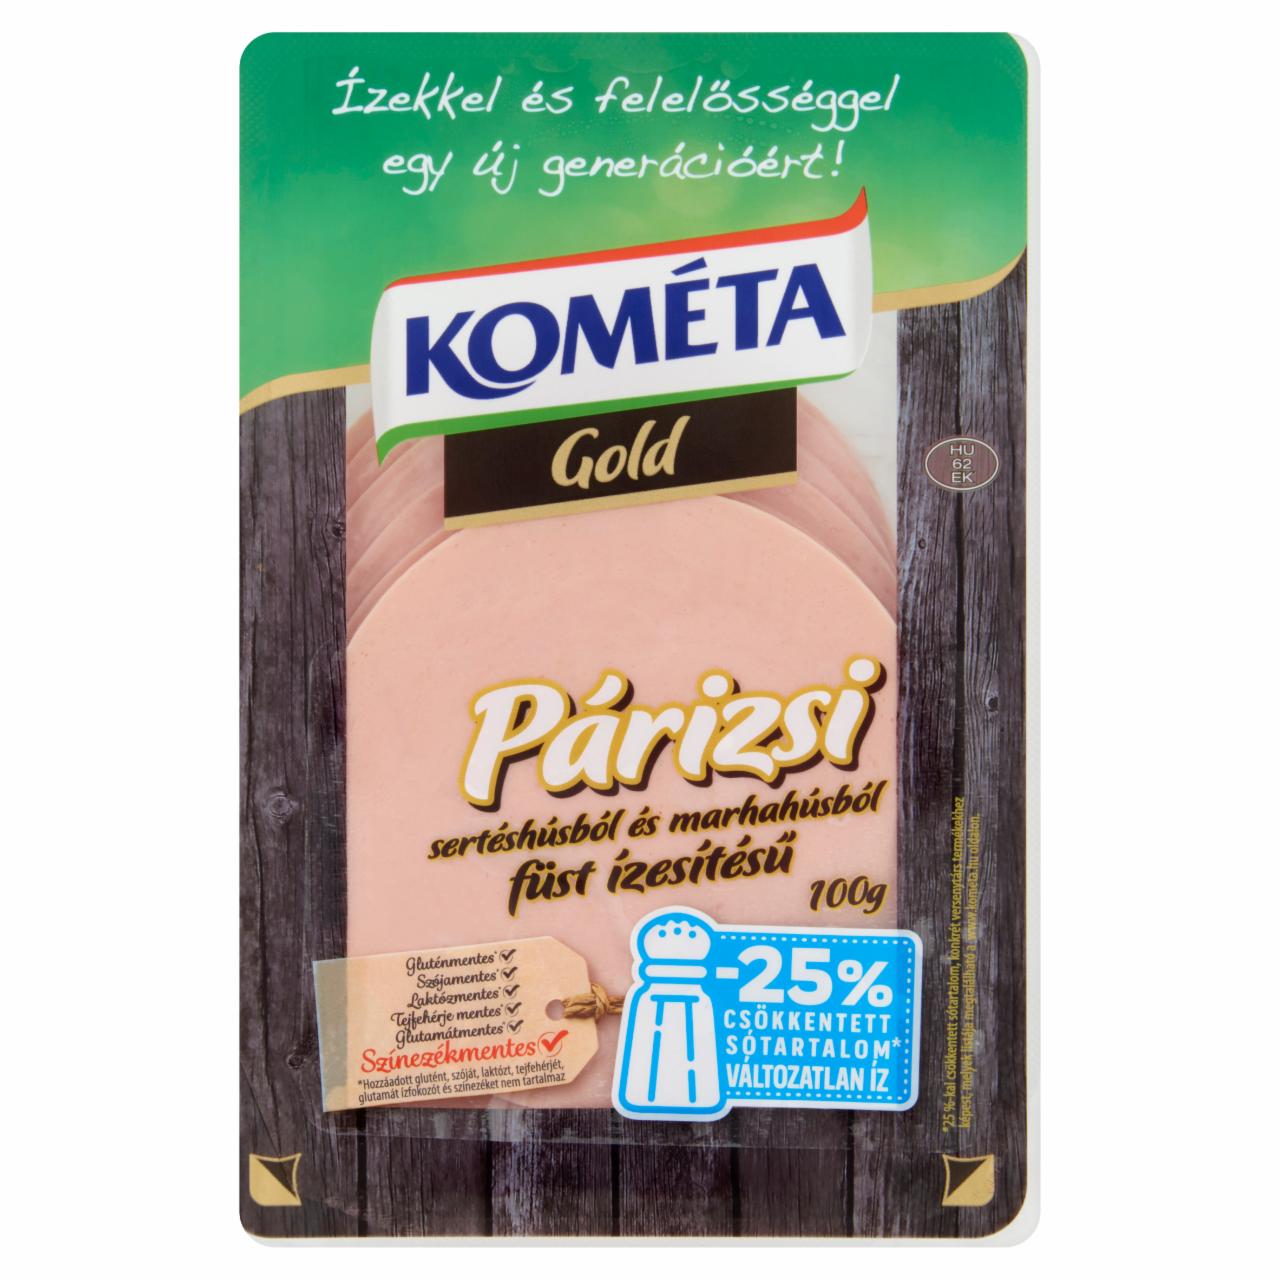 Képek - Kometa Gold szeletelt, füst ízesítésű párizsi sertéshúsból és marhahúsból 100 g